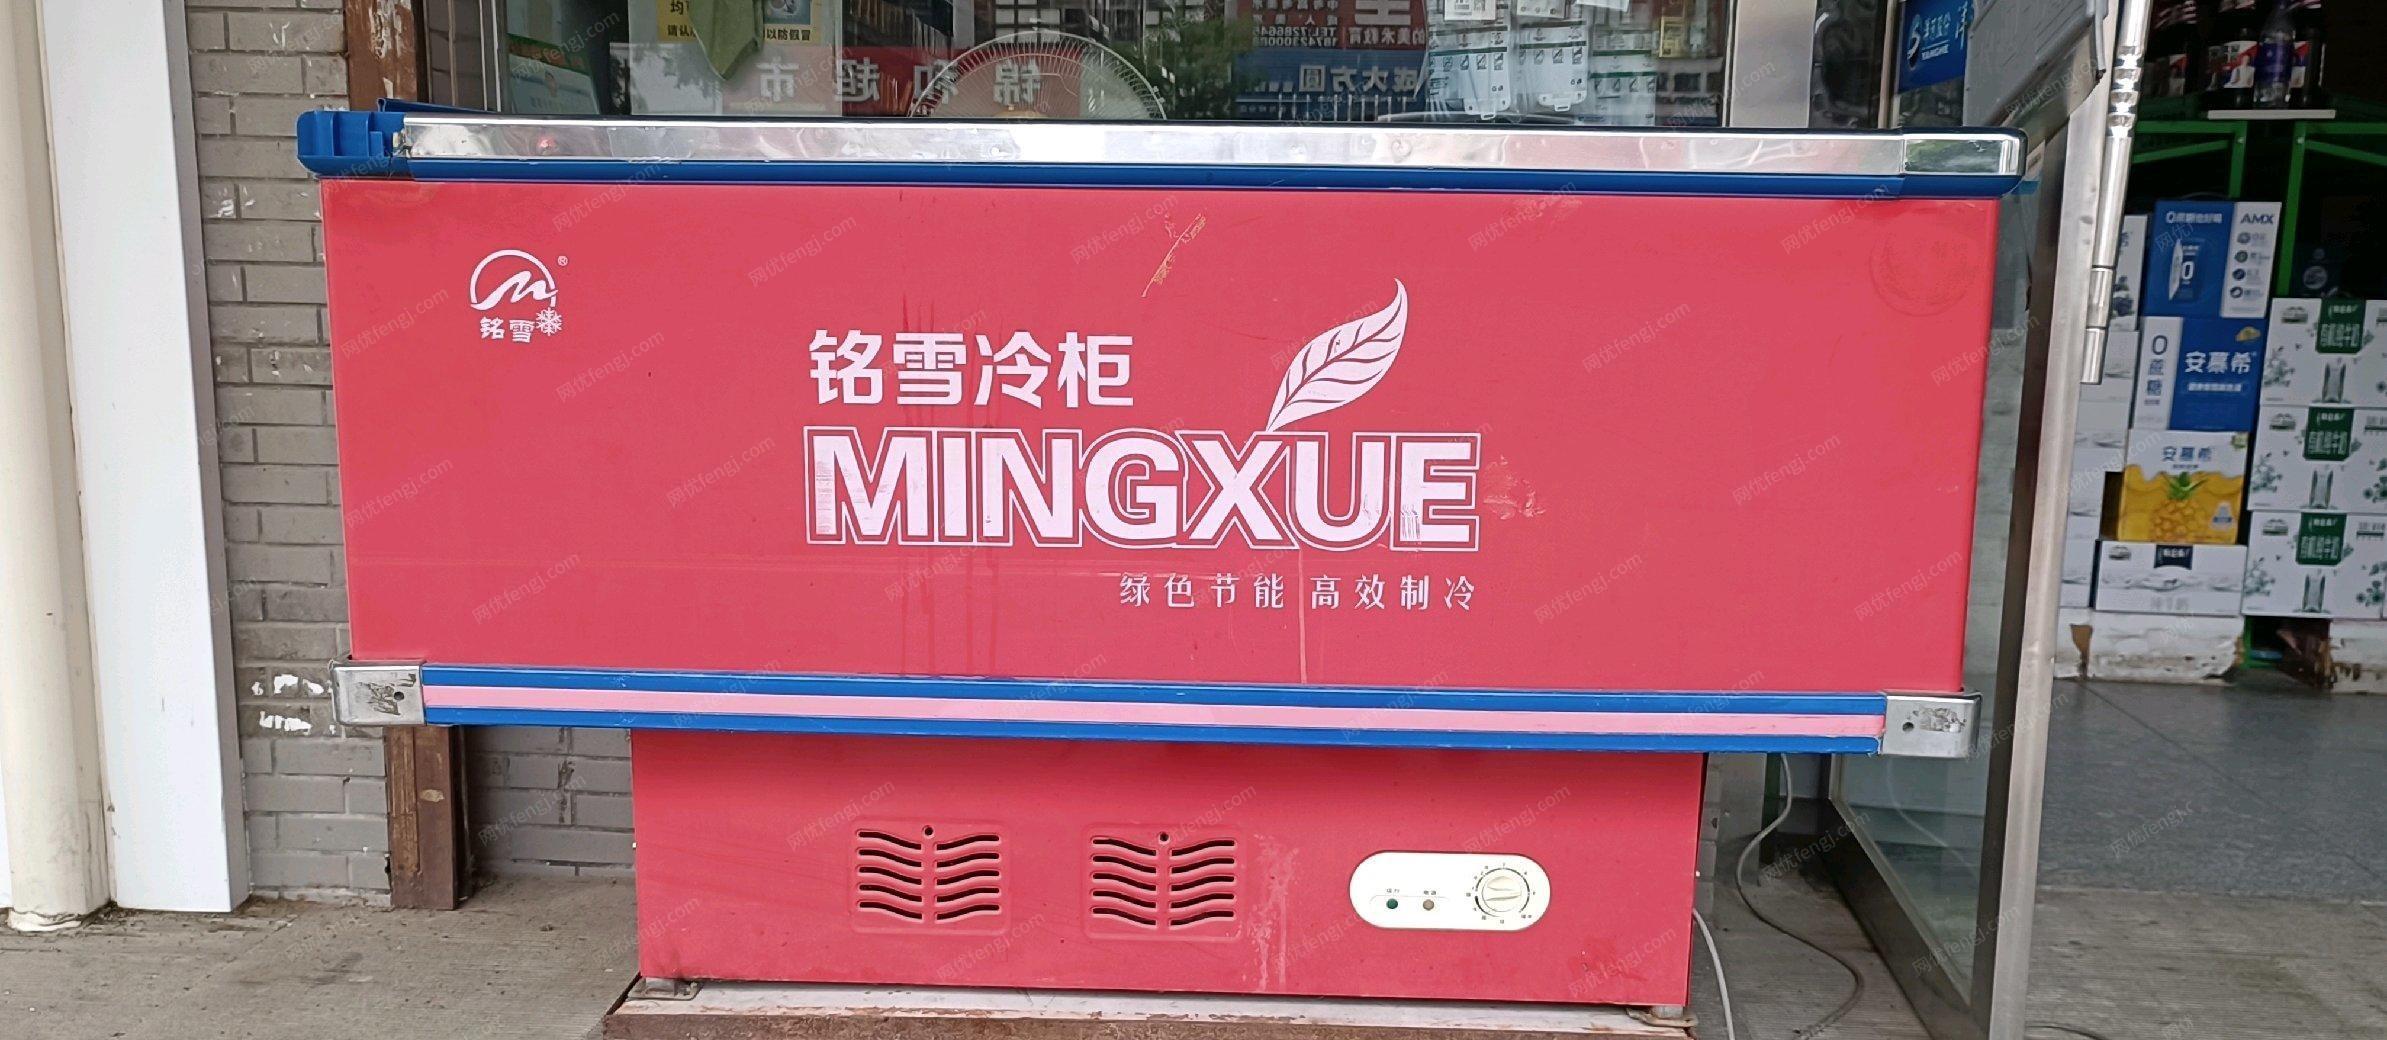 辽宁盘锦正在使用冷柜出售，因为店铺不干了，